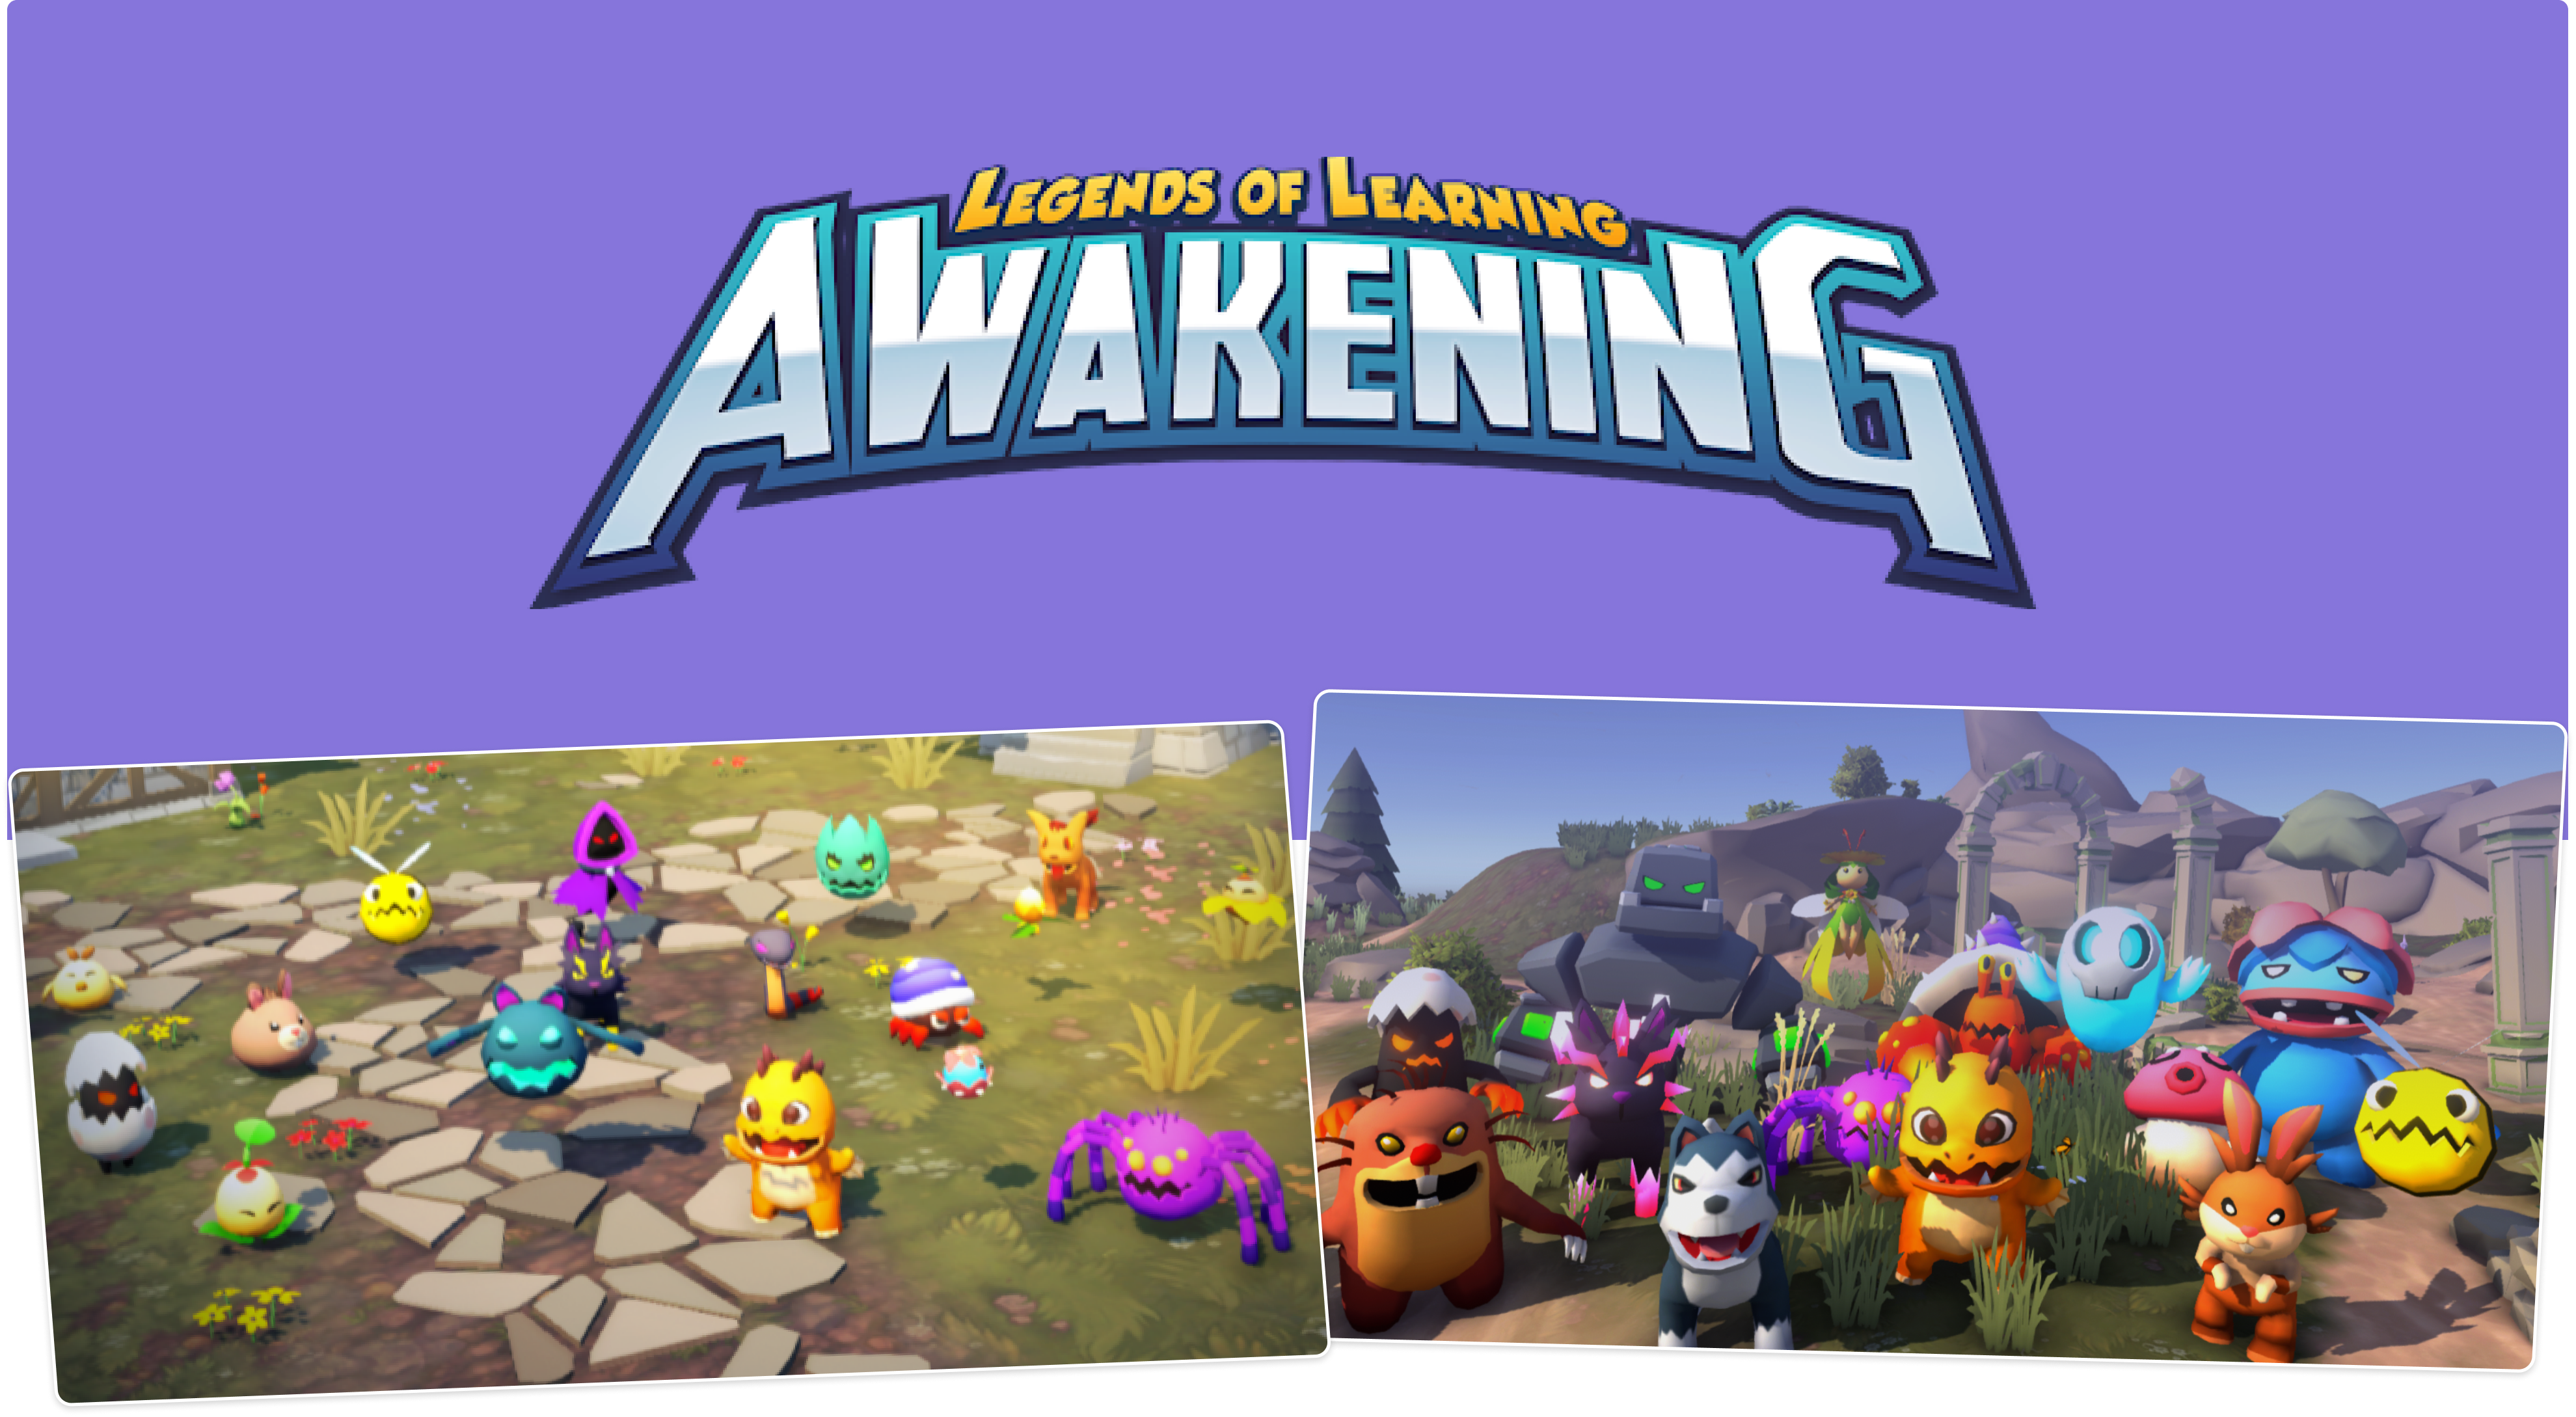 New things in Awakening!